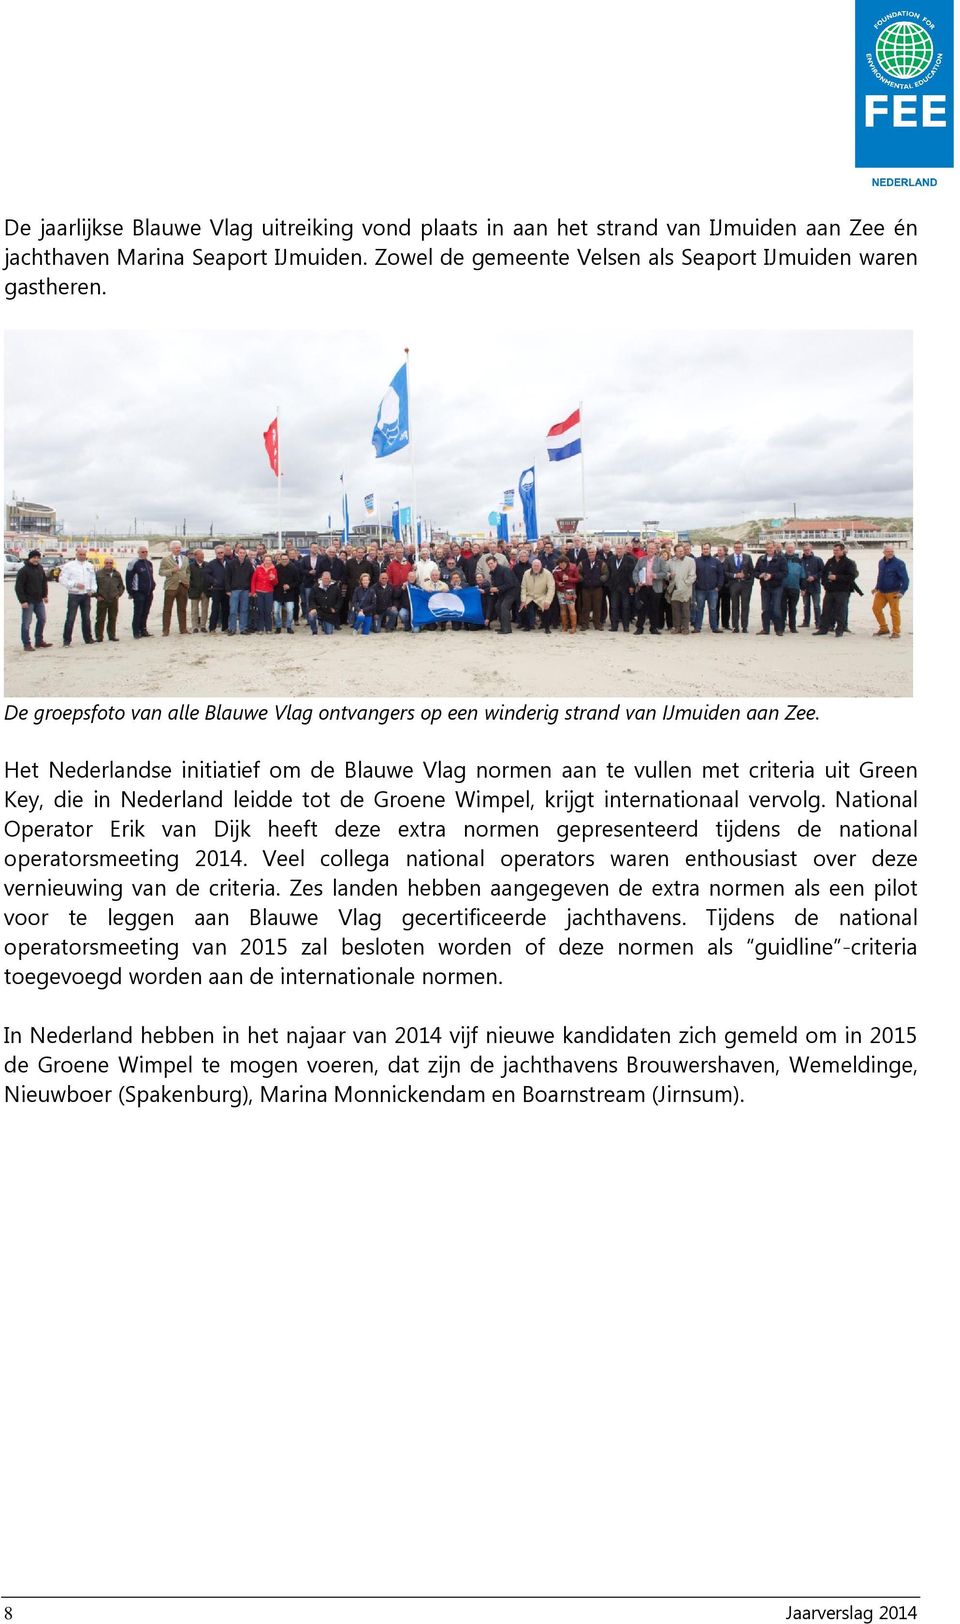 Het Nederlandse initiatief om de Blauwe Vlag normen aan te vullen met criteria uit Green Key, die in Nederland leidde tot de Groene Wimpel, krijgt internationaal vervolg.